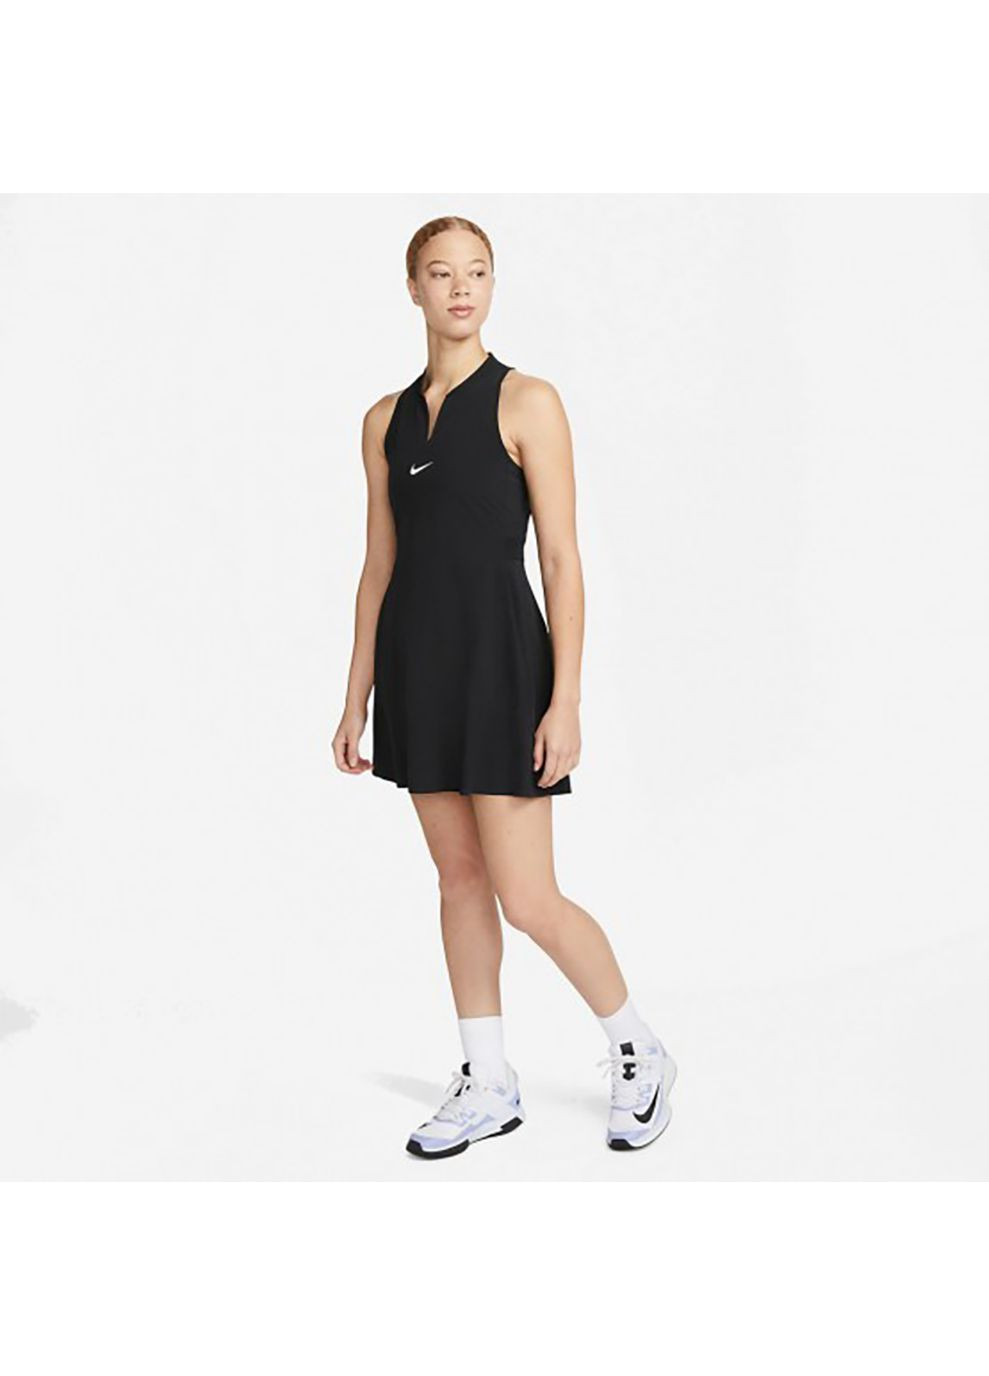 Черное спортивное женское платье df advtg dress черный Nike однотонное